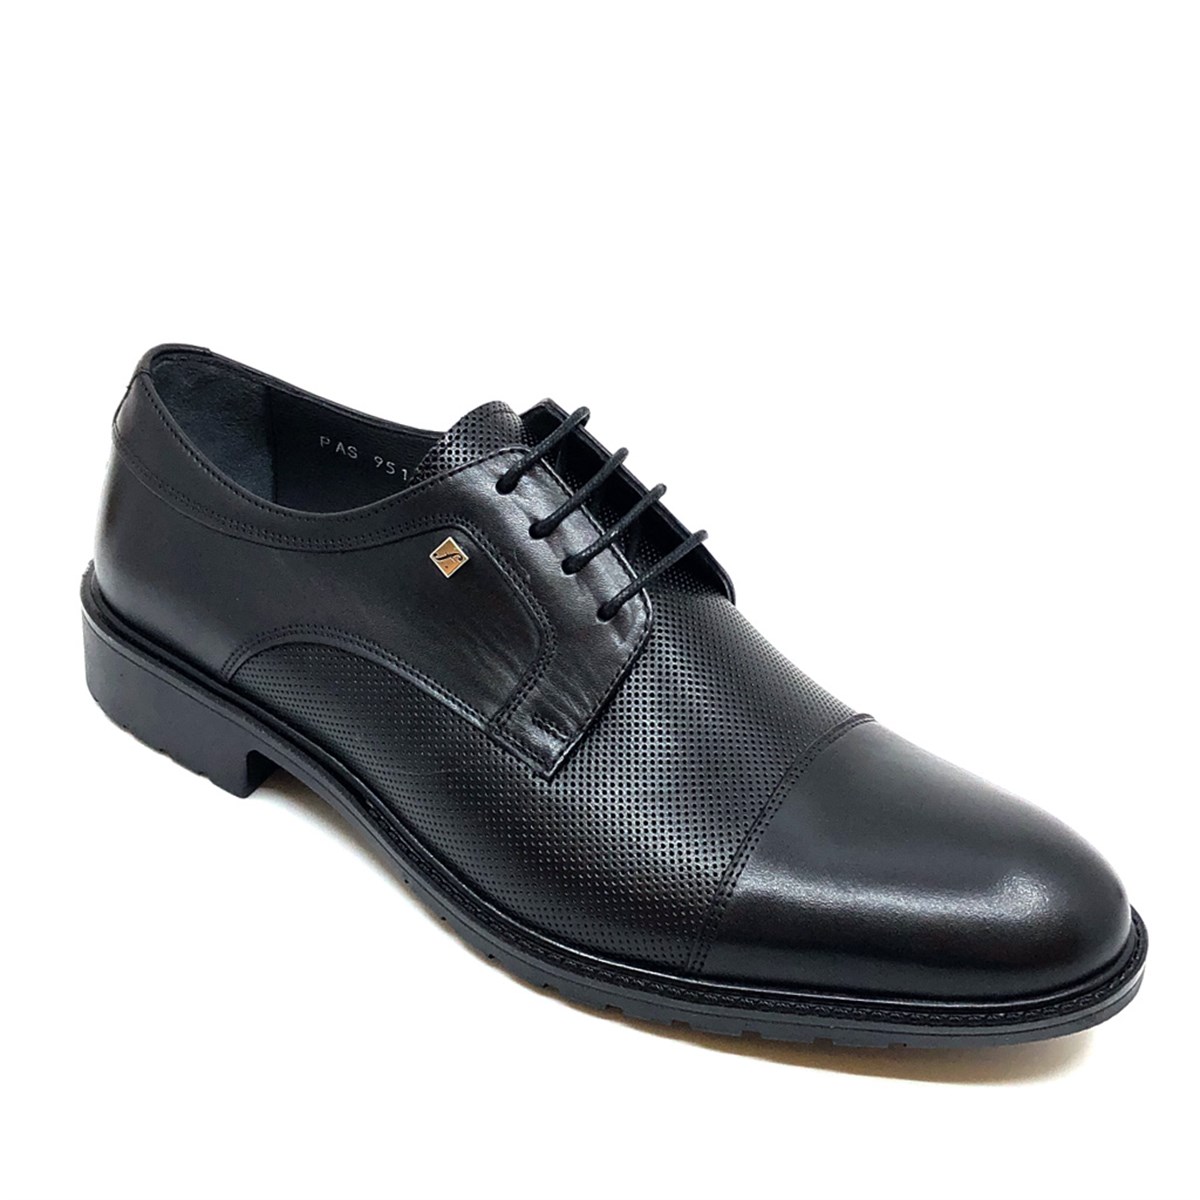 Hakiki Deri Erkek Klasik Ayakkabı, Renk: Siyah, Beden: 39